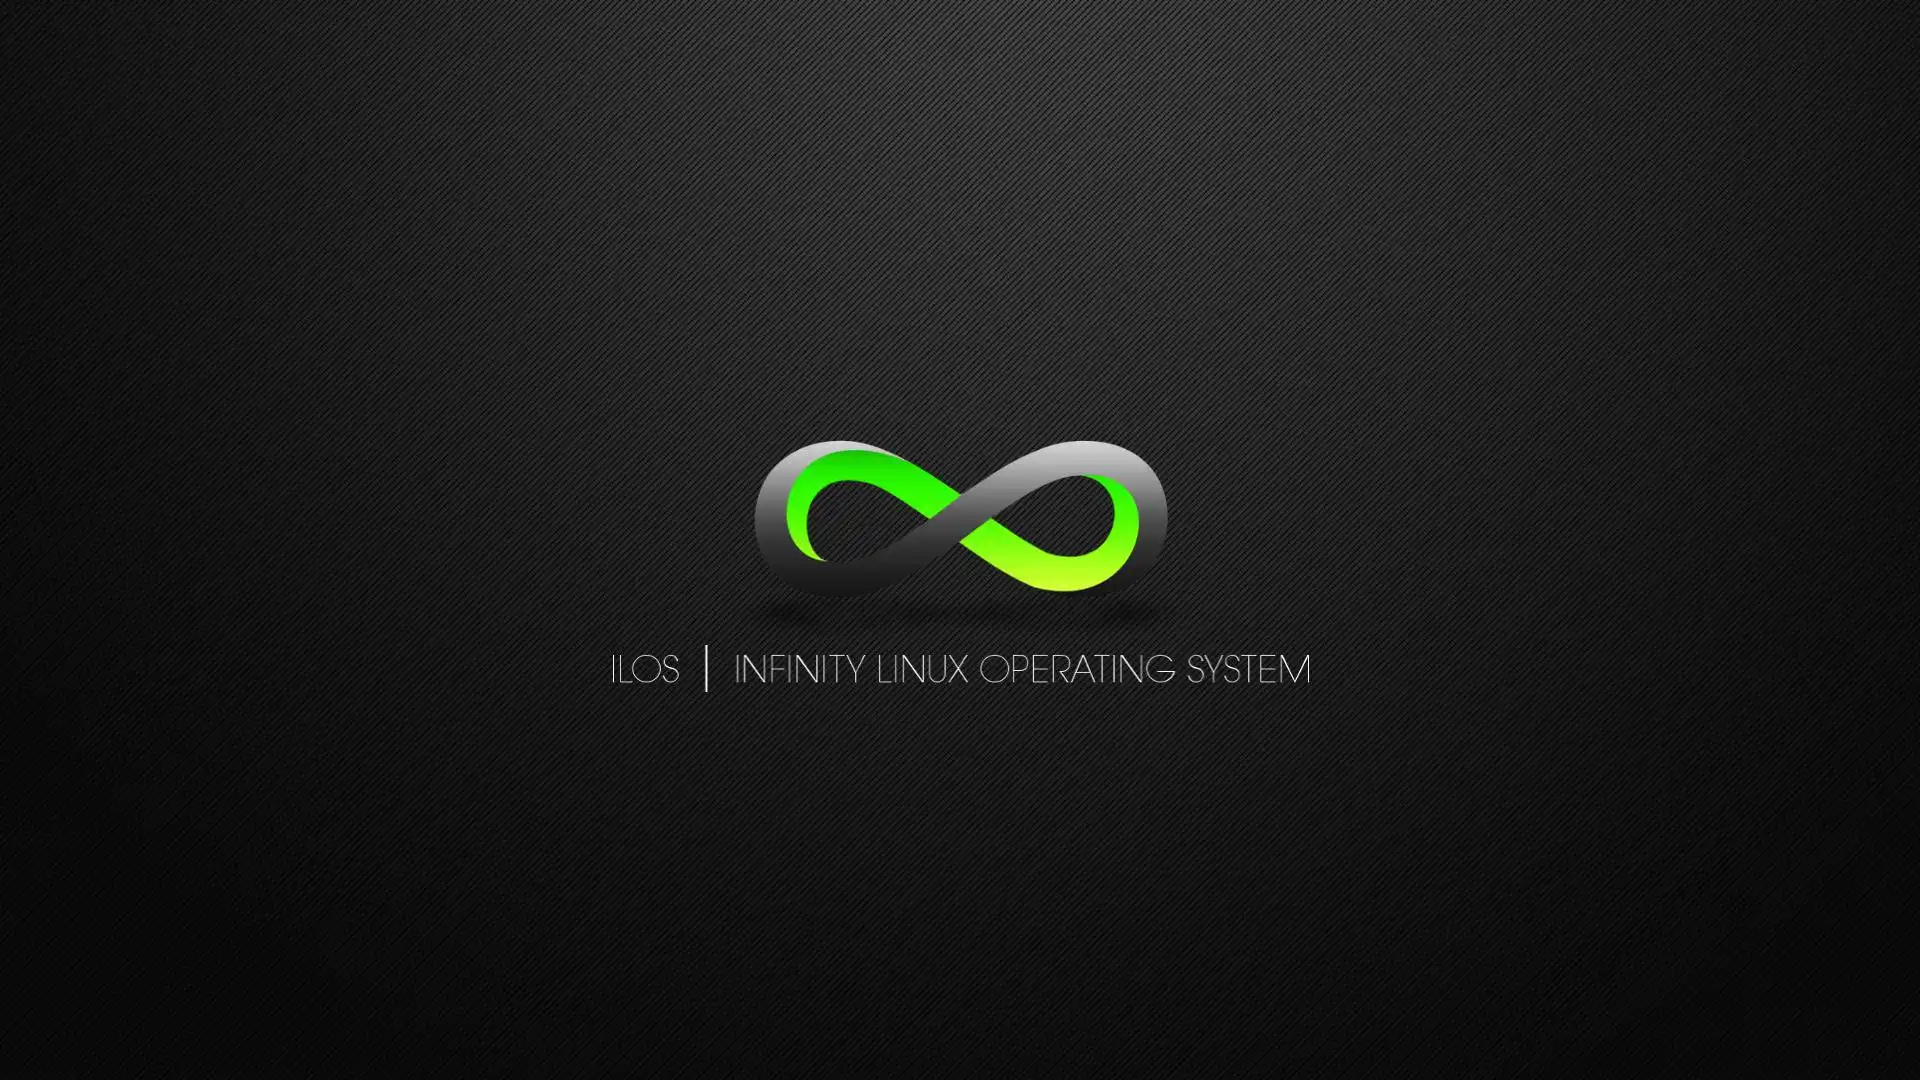 قم بتنزيل أداة الويب أو تطبيق الويب Infinity Linux OS